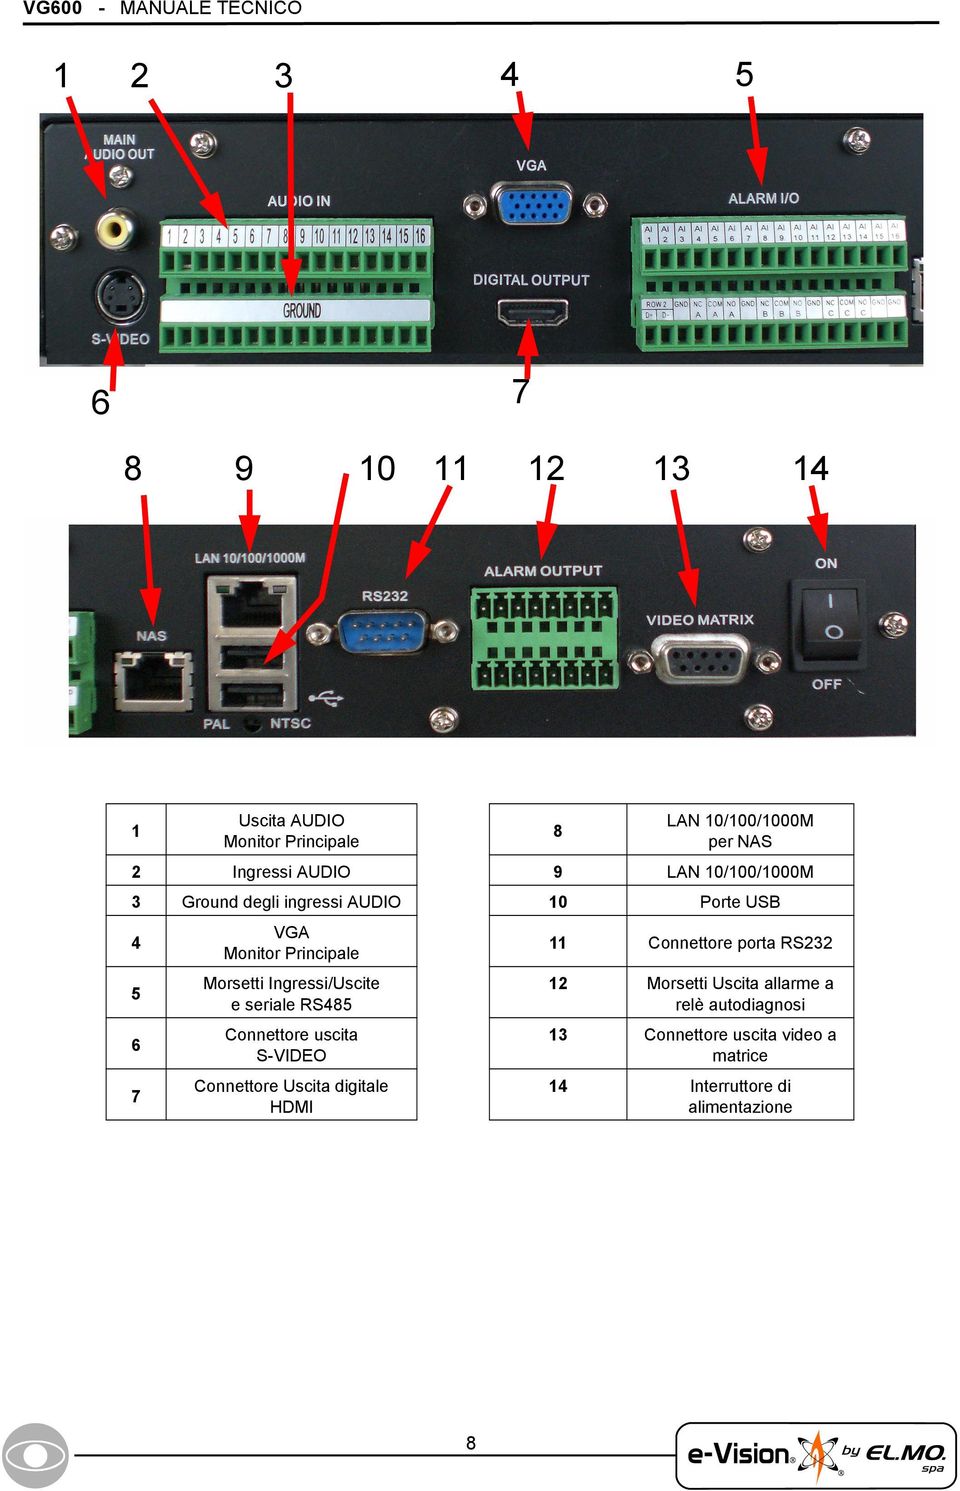 Morsetti Ingressi/Uscite e seriale RS485 Connettore uscita S-VIDEO Connettore Uscita digitale HDMI 11 Connettore